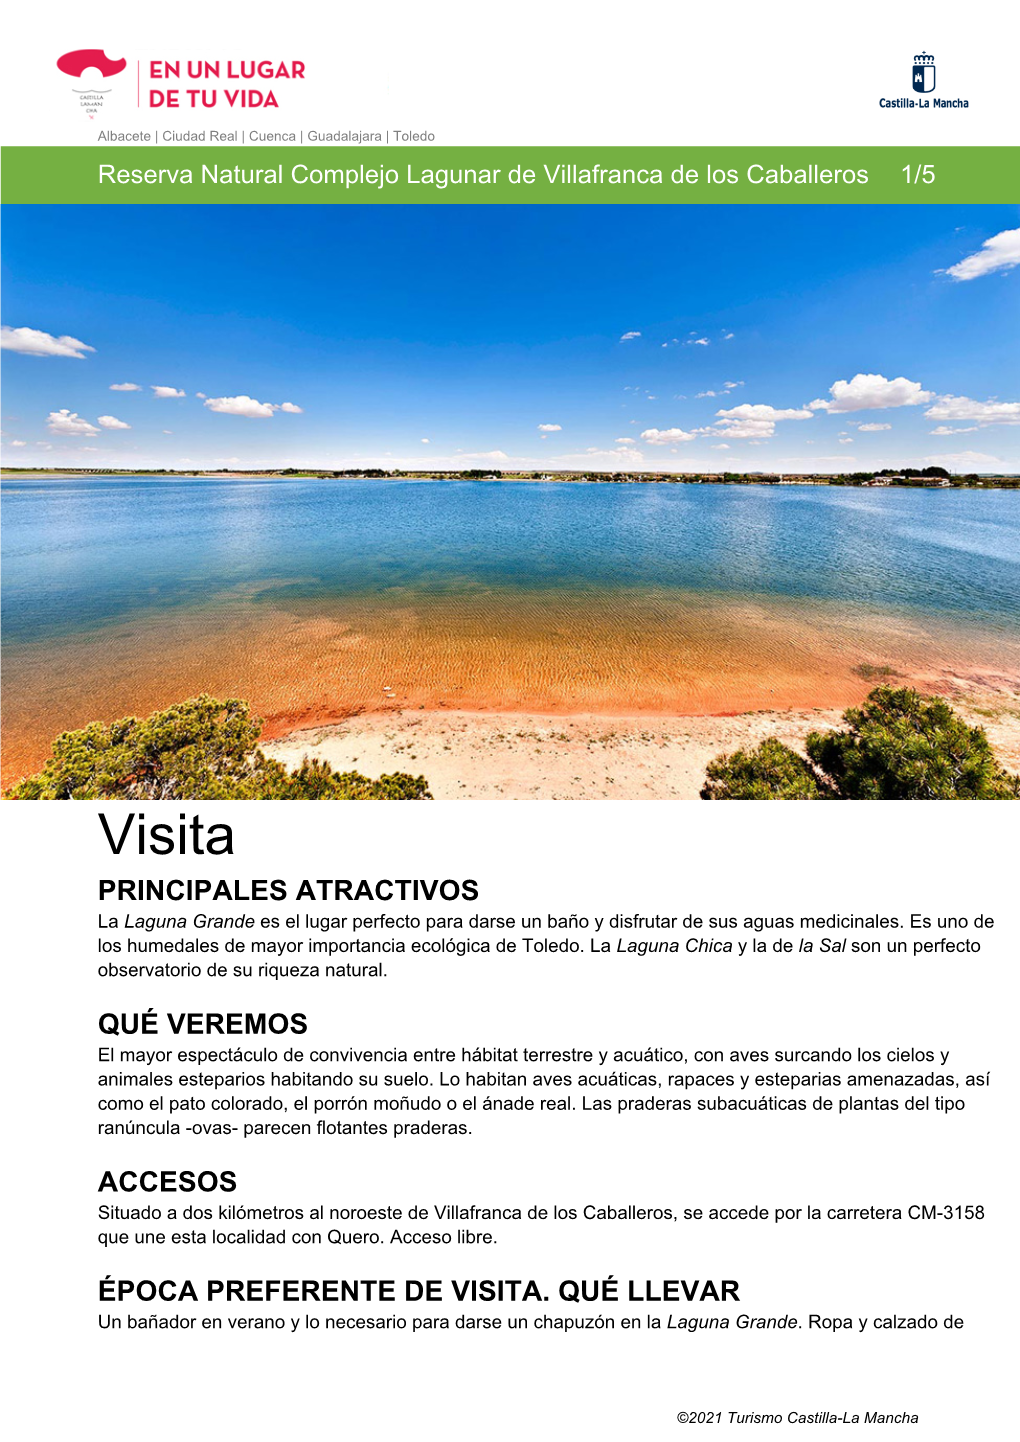 Visita PRINCIPALES ATRACTIVOS La Laguna Grande Es El Lugar Perfecto Para Darse Un Baño Y Disfrutar De Sus Aguas Medicinales